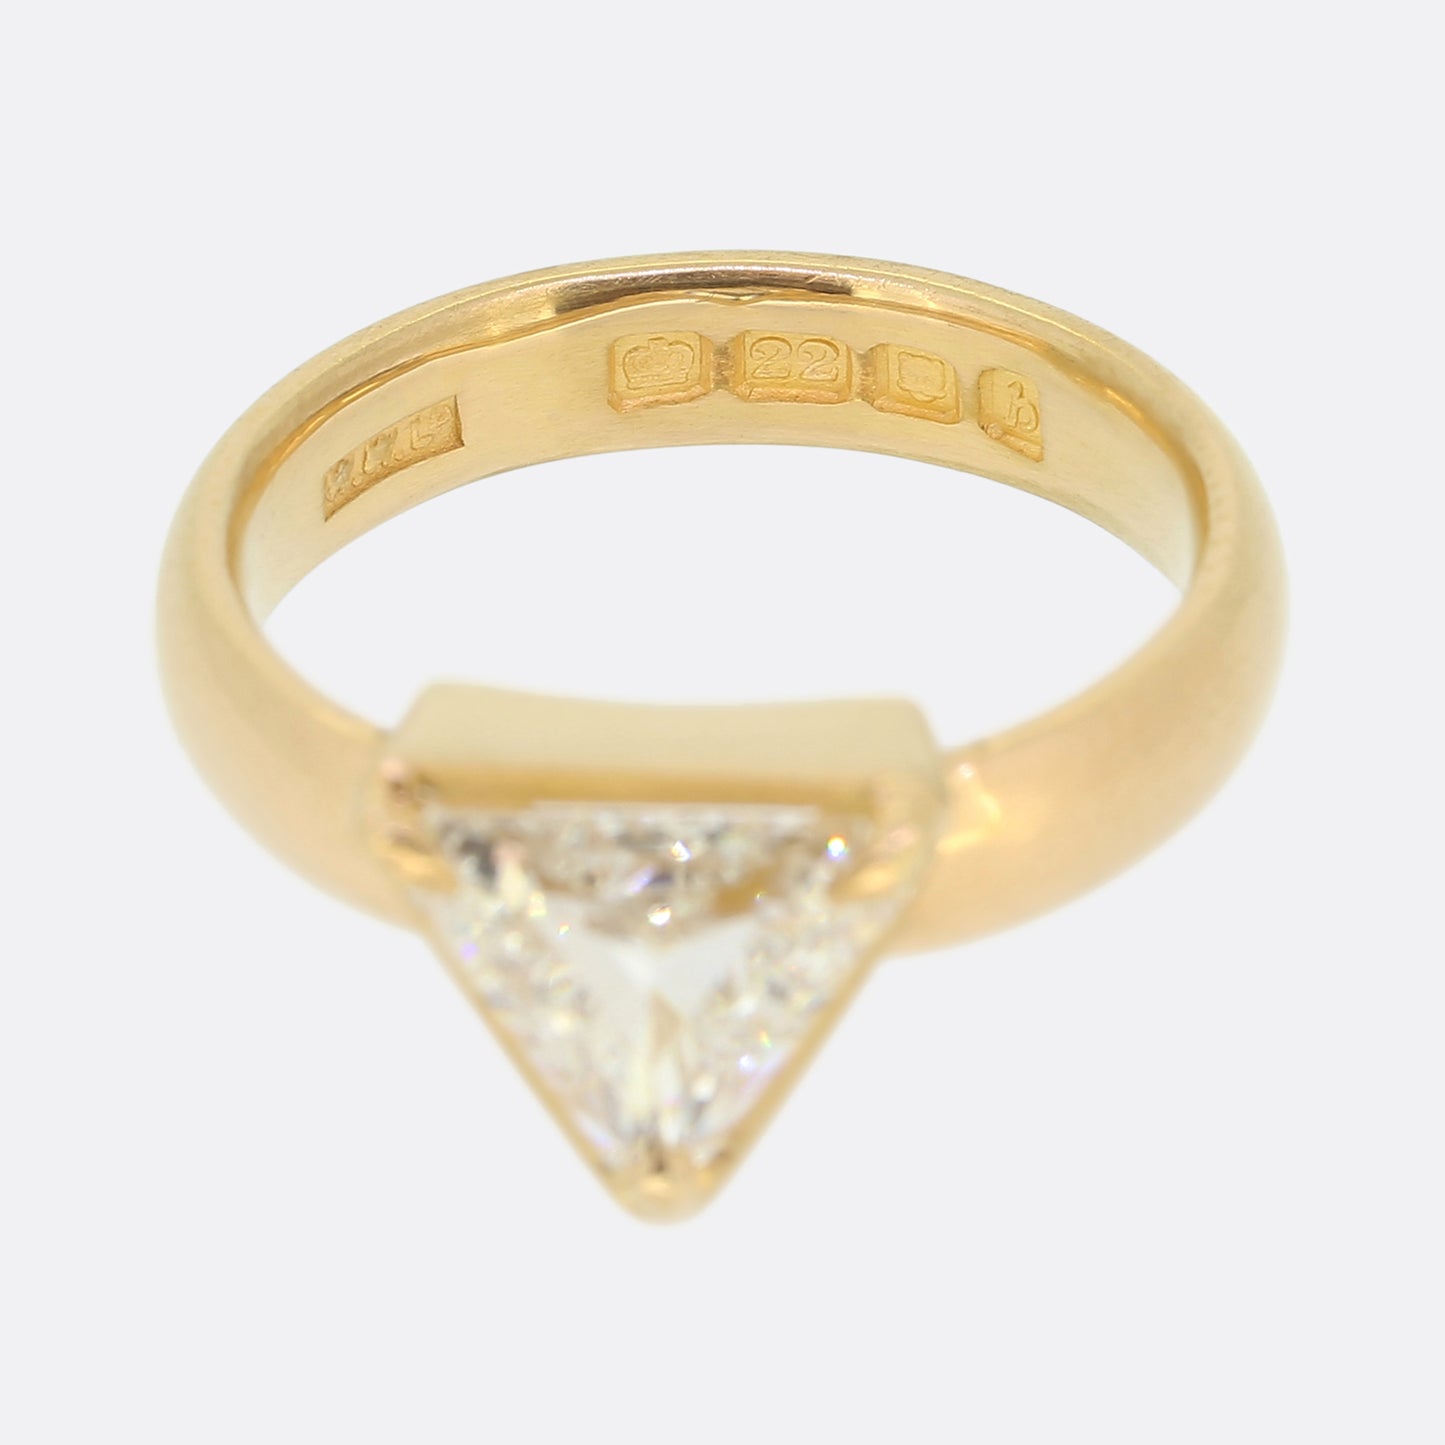 1.29 Carat Triangular Cut Diamond Solitaire Ring